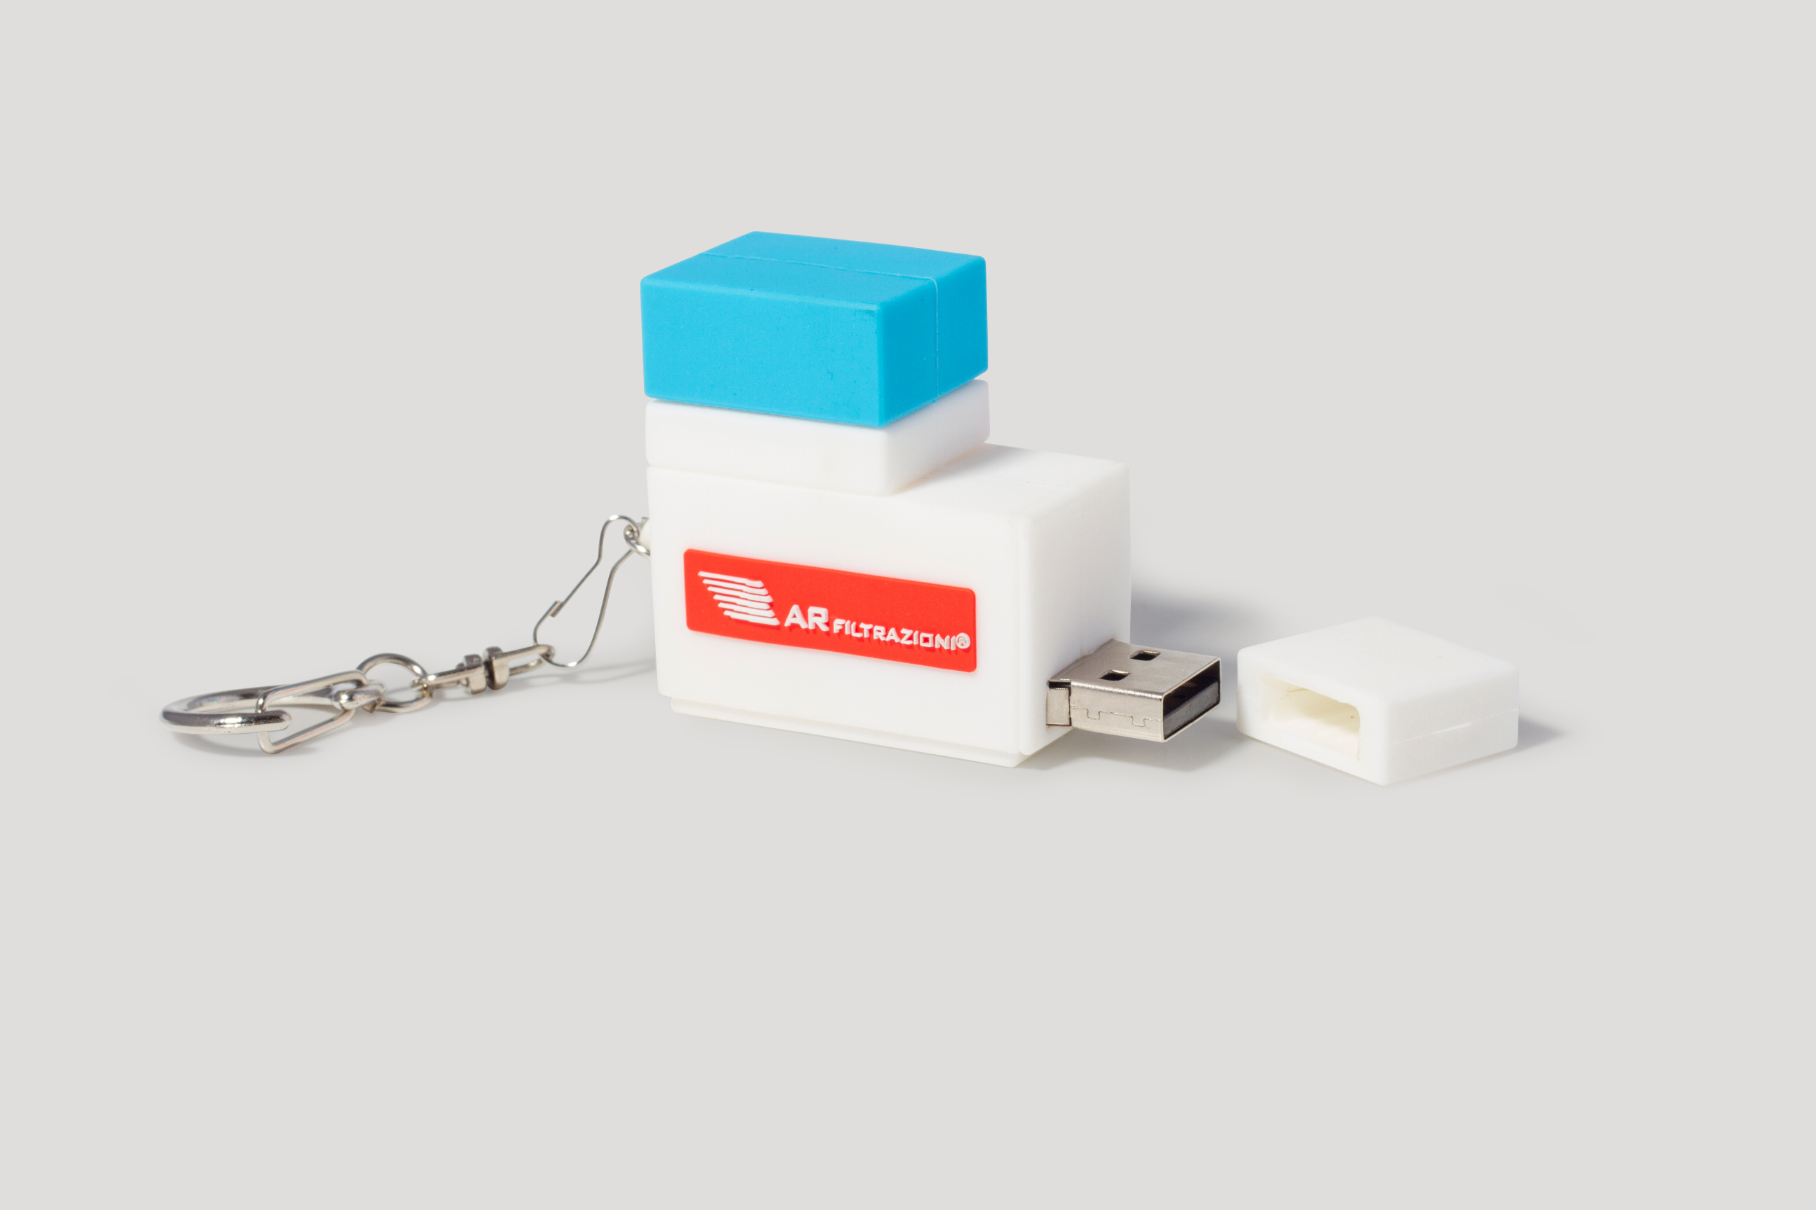 USB a forma di un prodotto